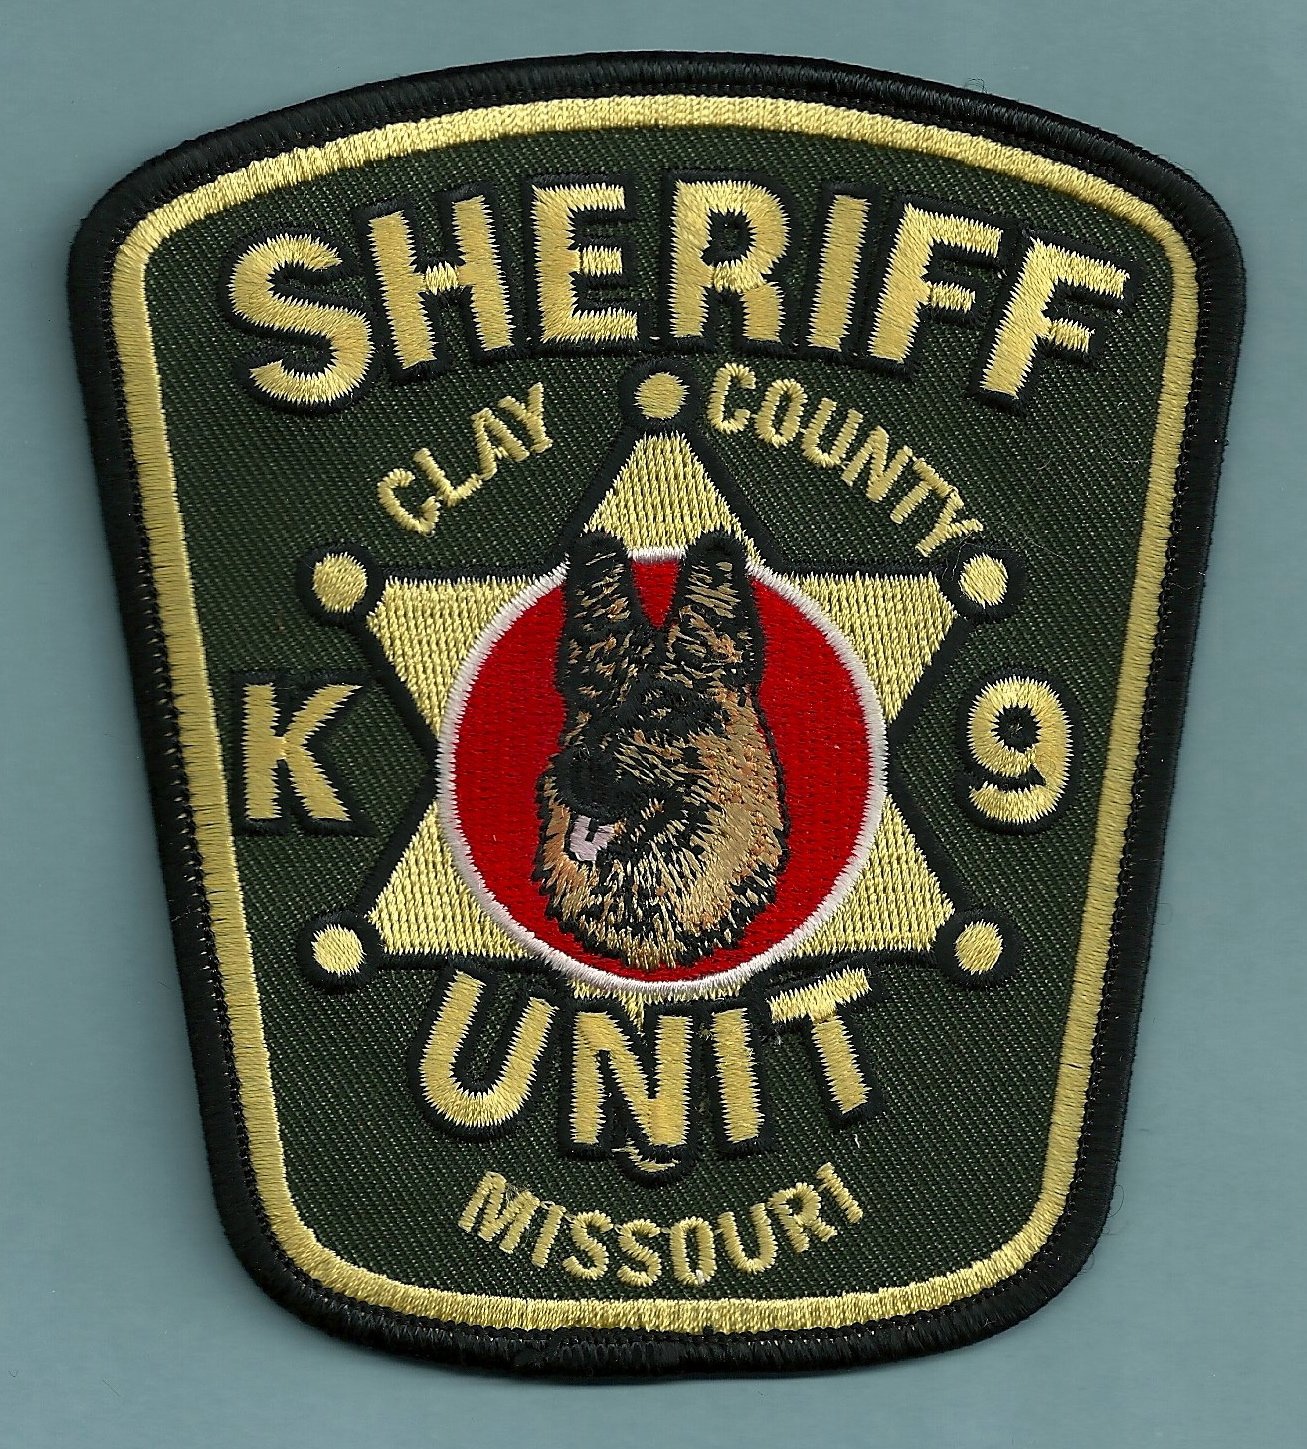 CLAY COUNTY MISSOURI SHERIFF K-9 UNIT POLICE PATCH